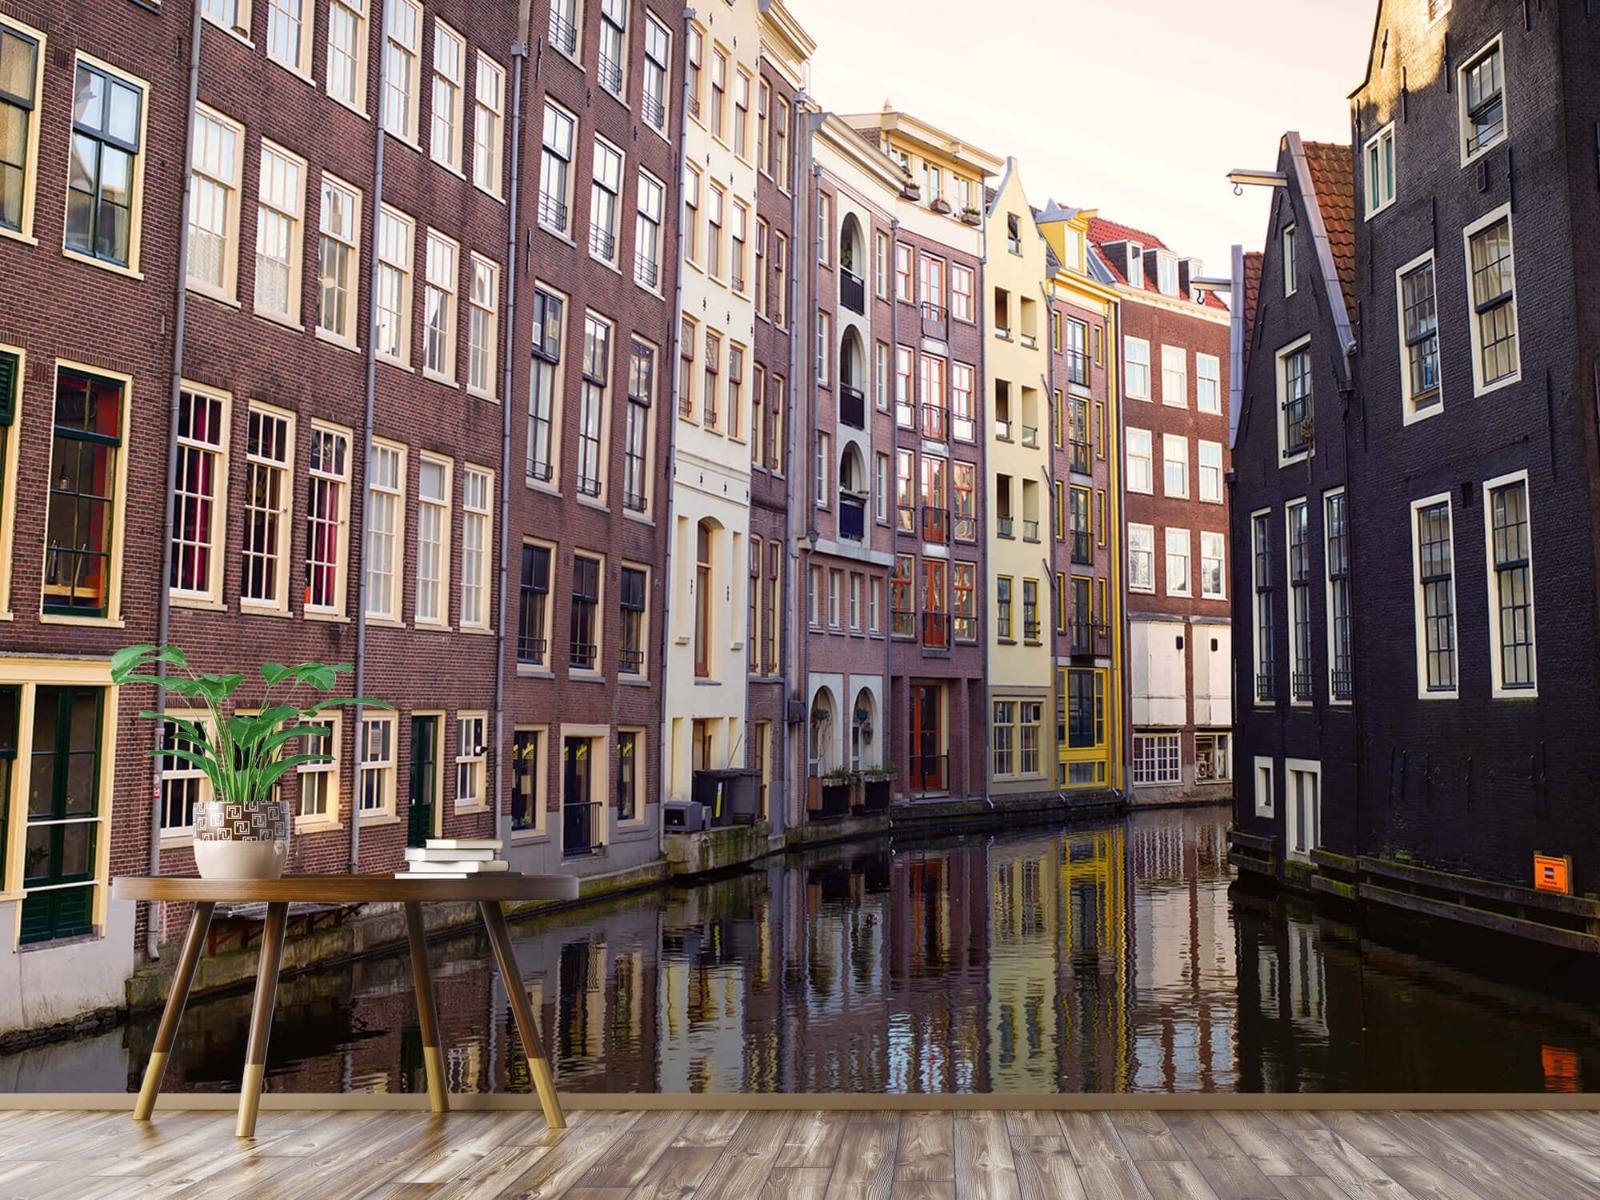 Gebouwen - Amsterdamse huizen aan de gracht - Tienerkamer 4